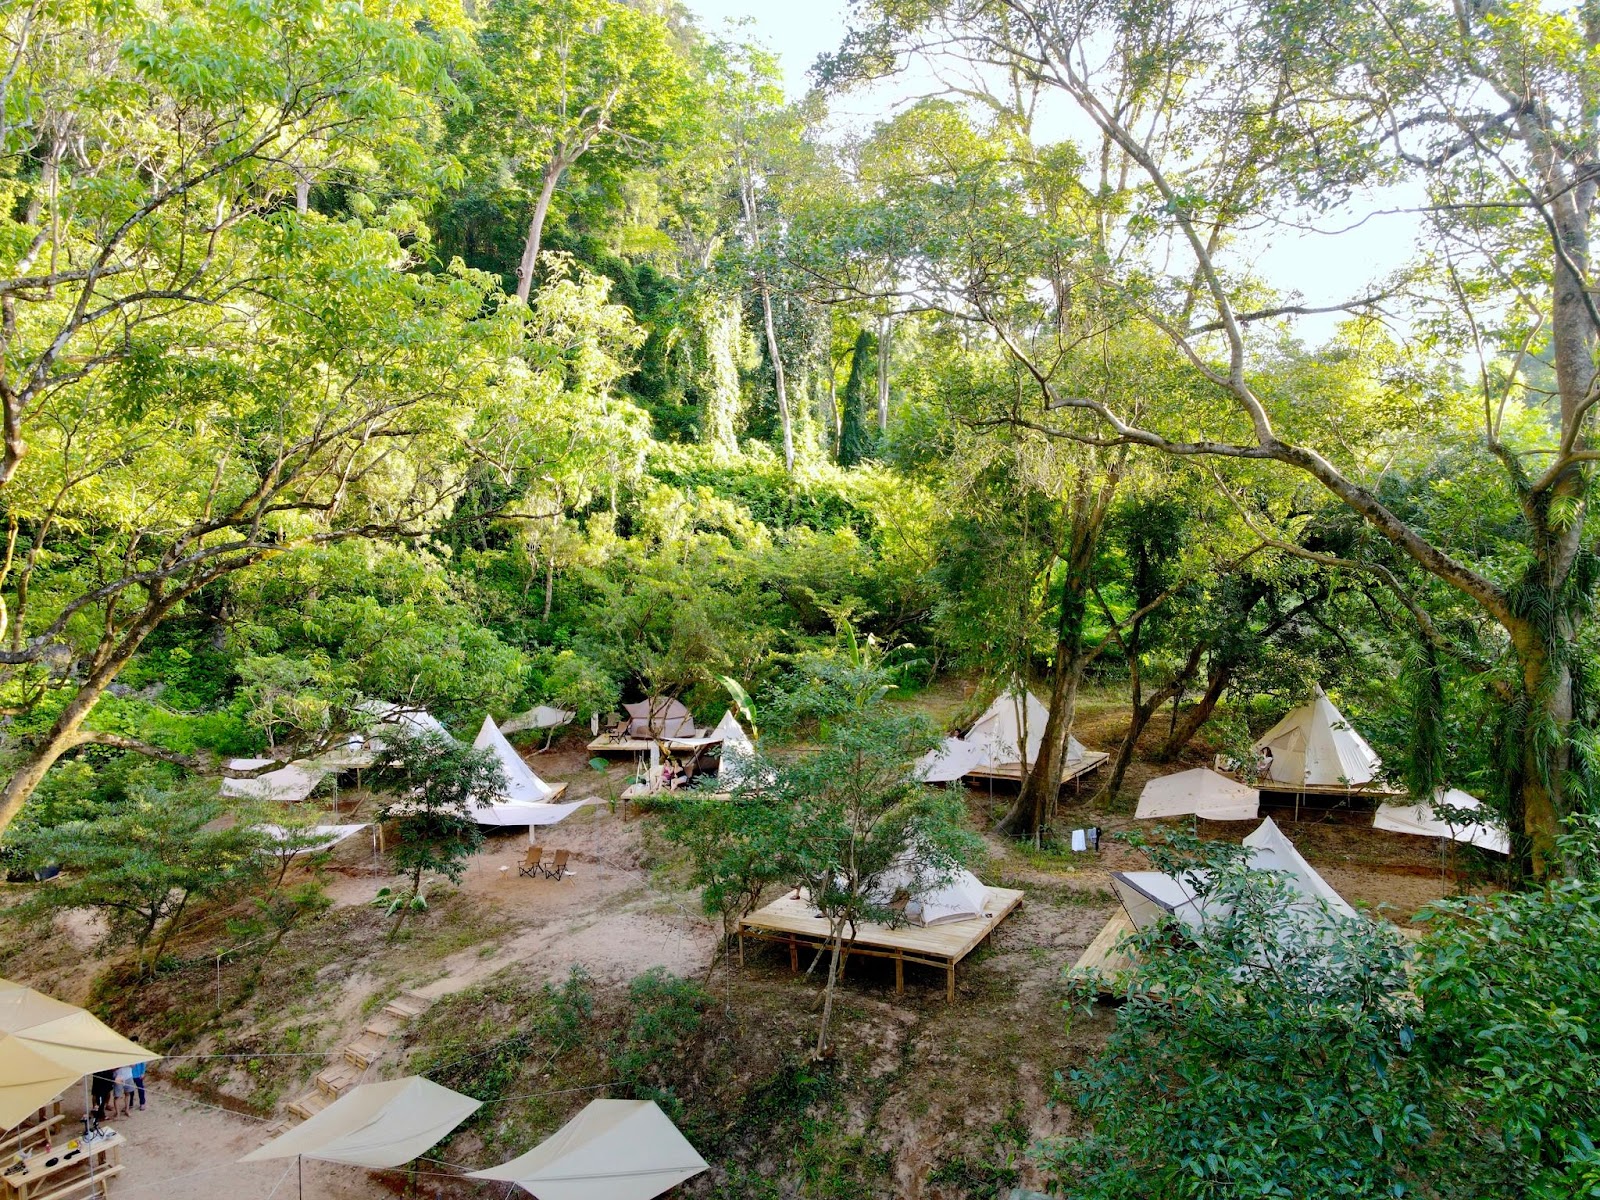 Trải nghiệm cắm trại "thật chill" trong núi rừng Phong Nha - Kẻ Bàng - 1